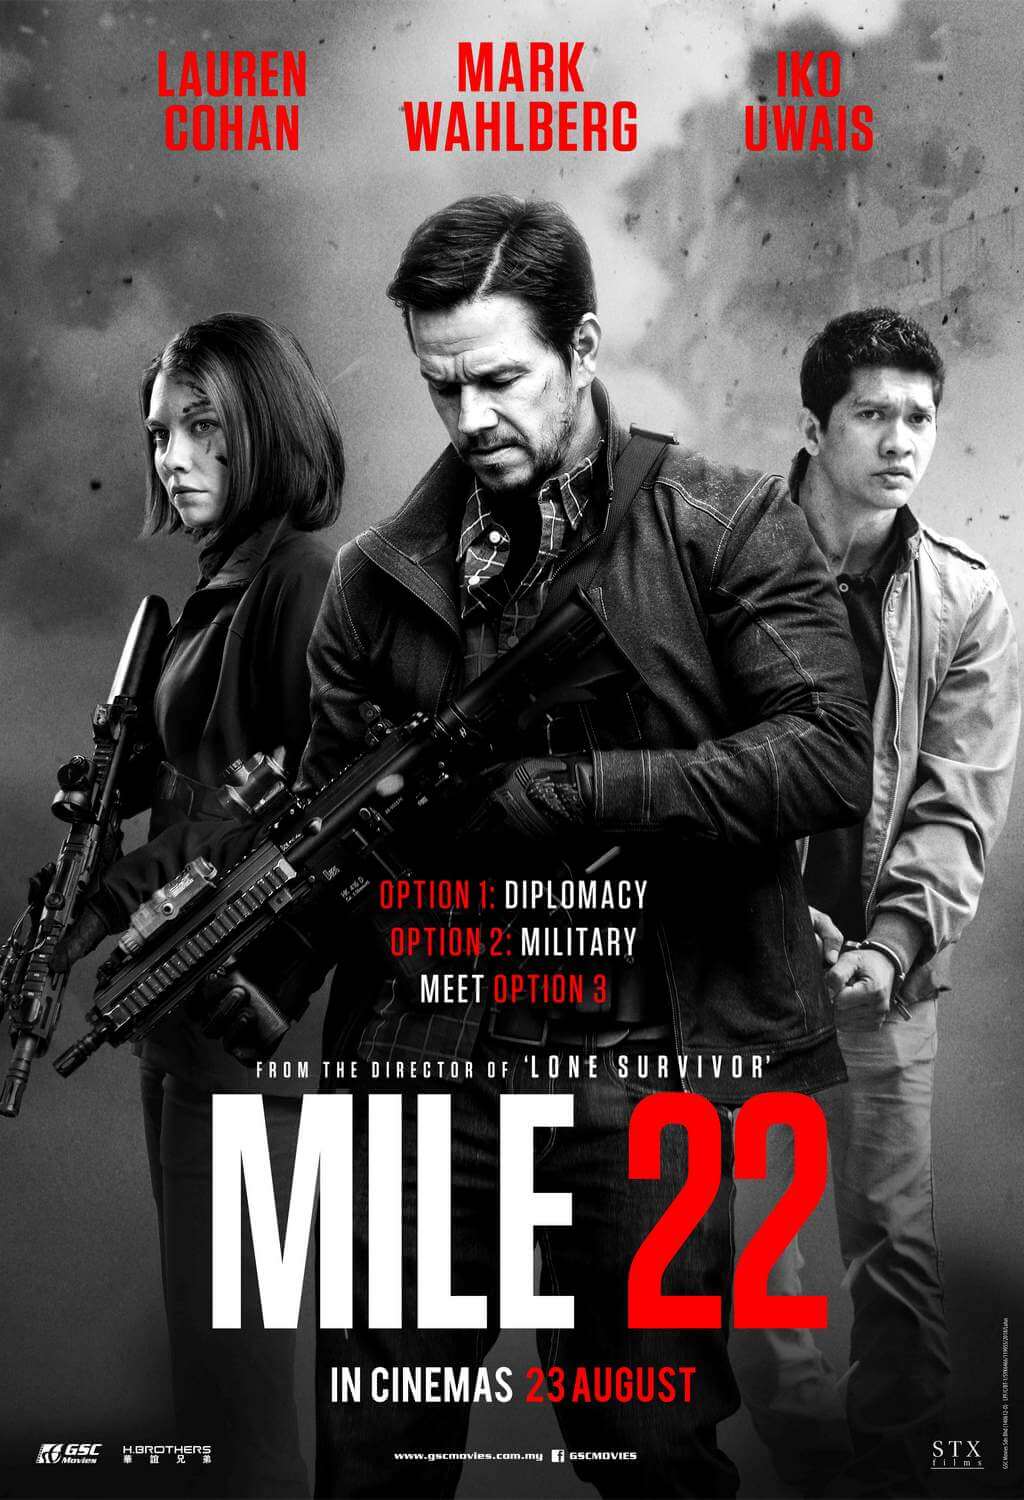 دانلود رایگان فیلم مایل ۲۲ با دوبله فارسی Mile 22 2018 BluRay